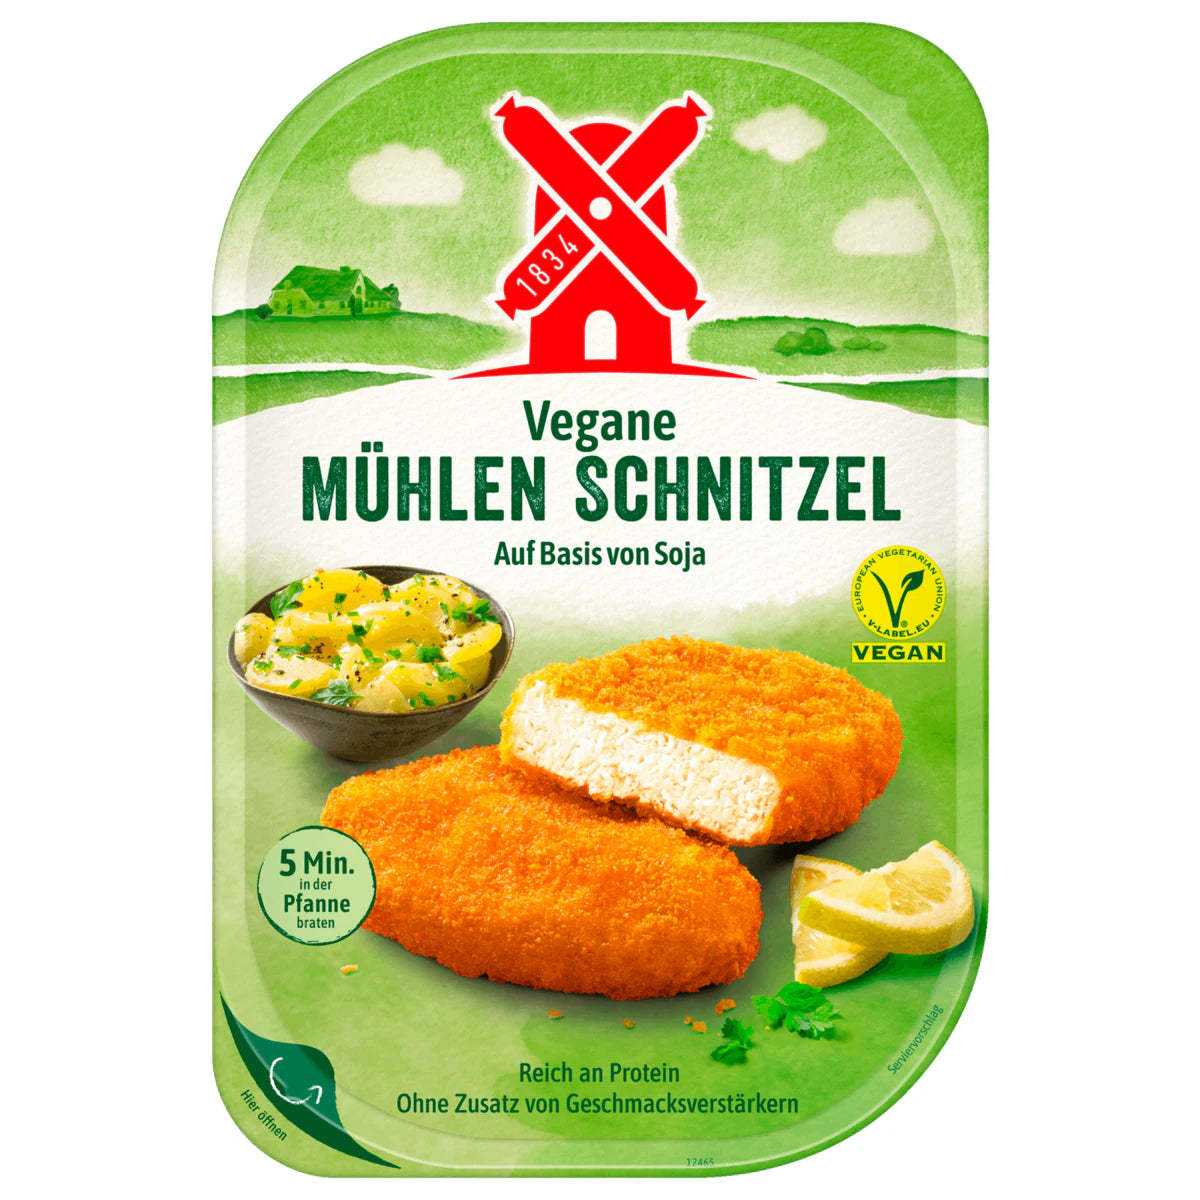 Rügenwalder Mühlen Schnitzel (Vegan Cutlet) - 180 g